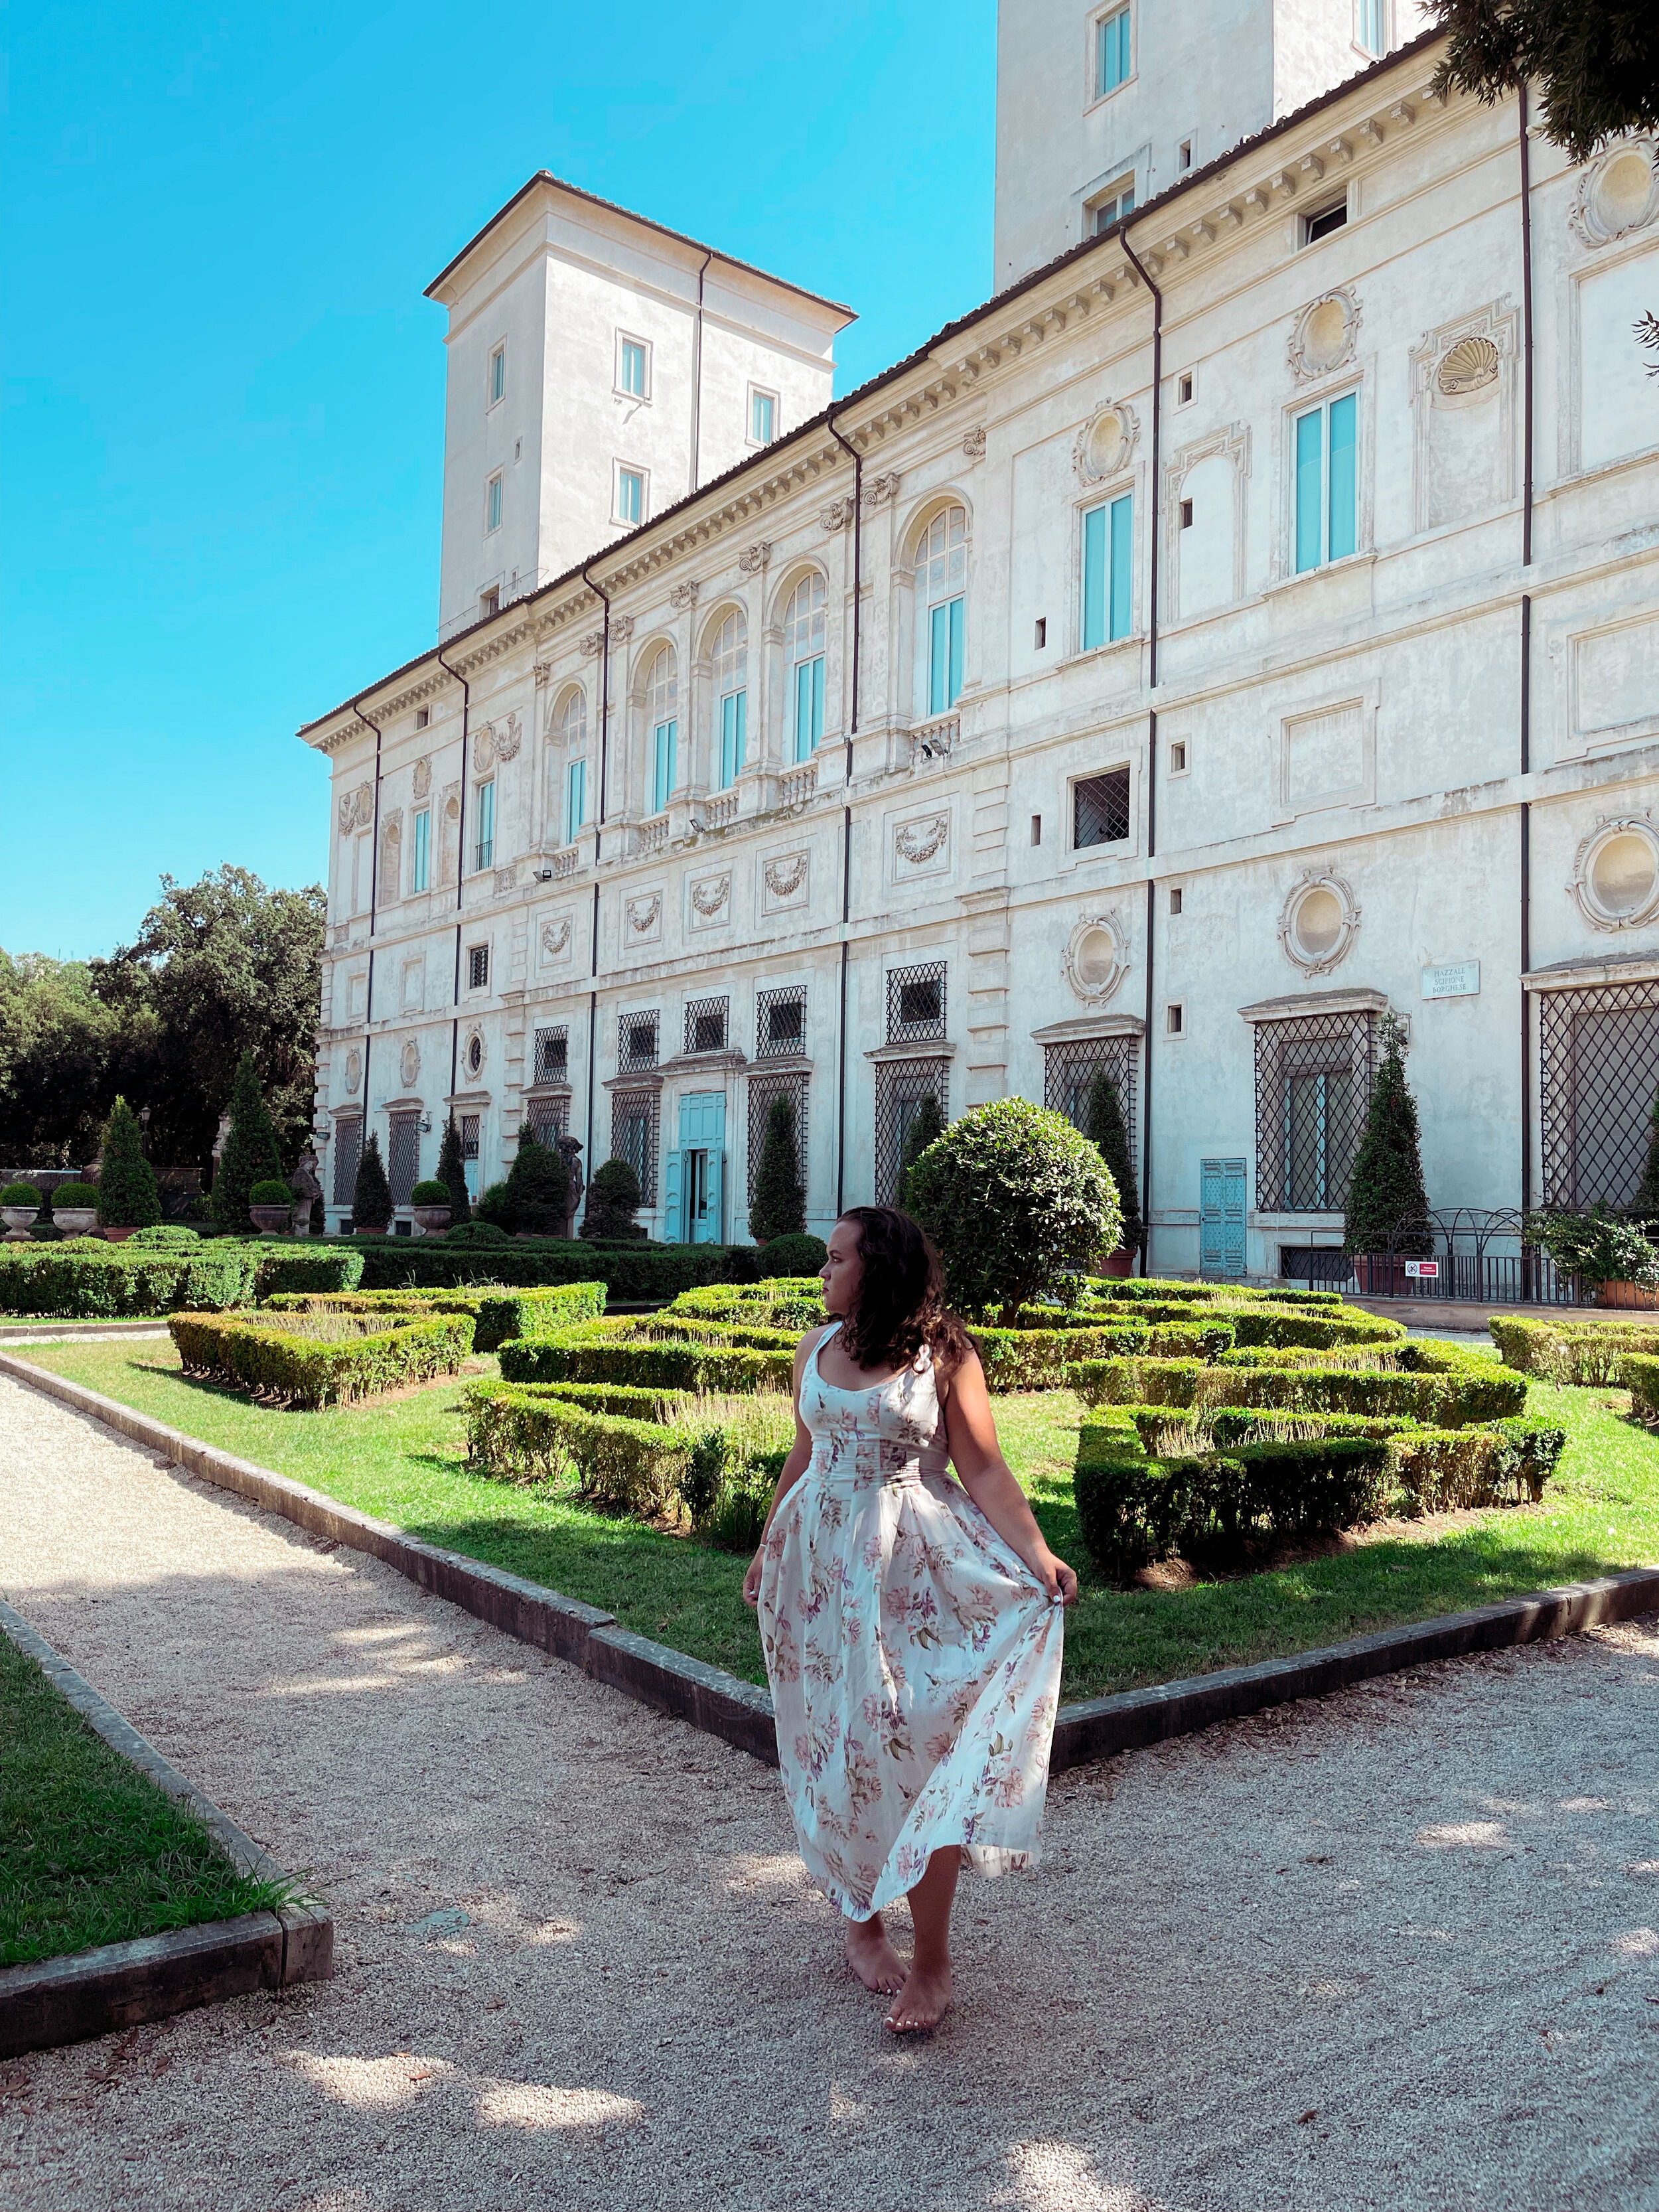 Villa Borghese.JPG